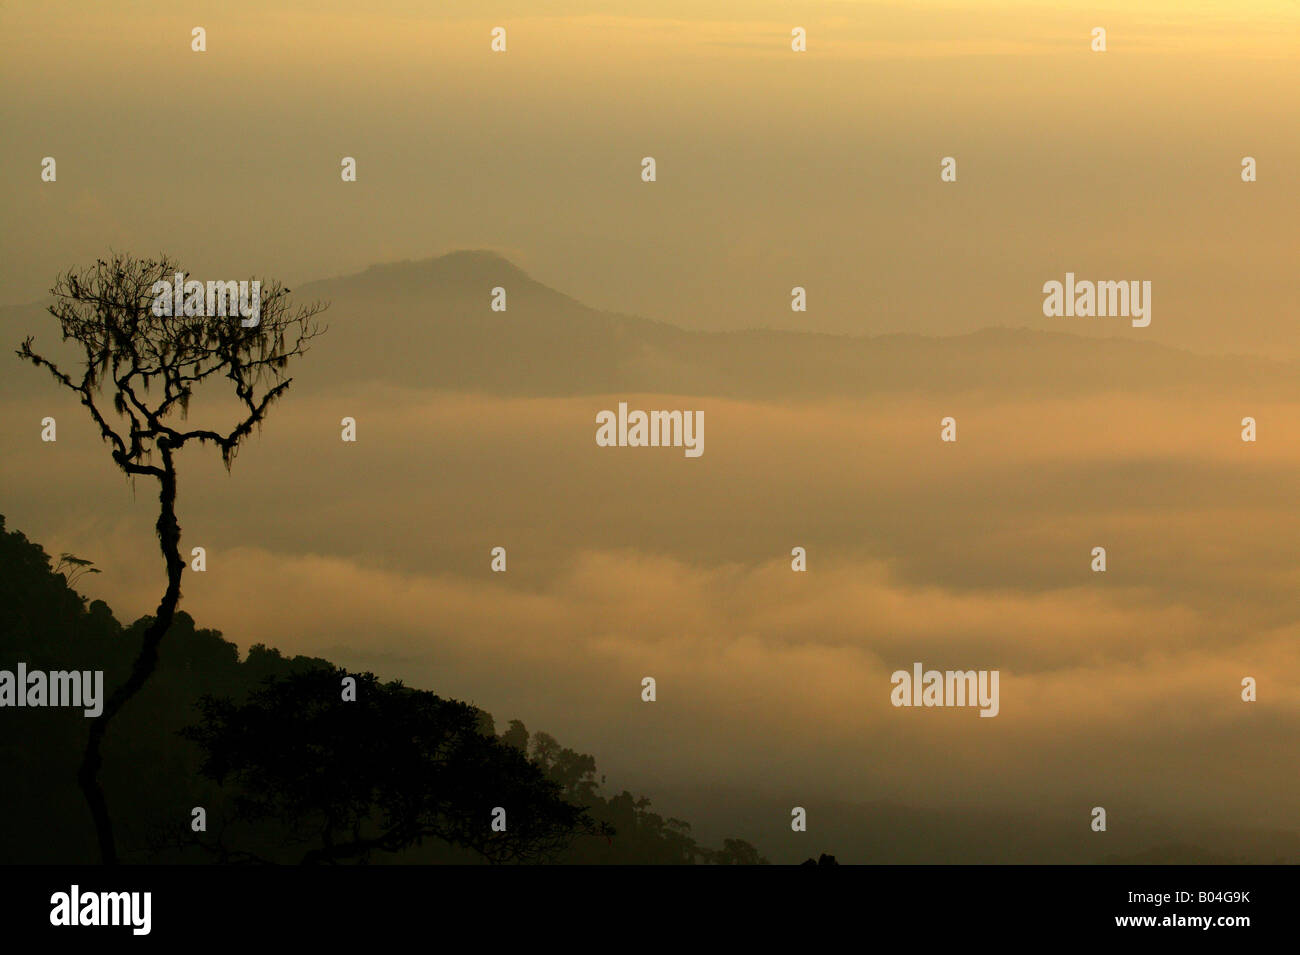 Forêt pluviale brumeuse au lever du soleil vue de Cerro Pirre dans le parc national de Darien, province de Darien, République du Panama, Amérique centrale. Banque D'Images